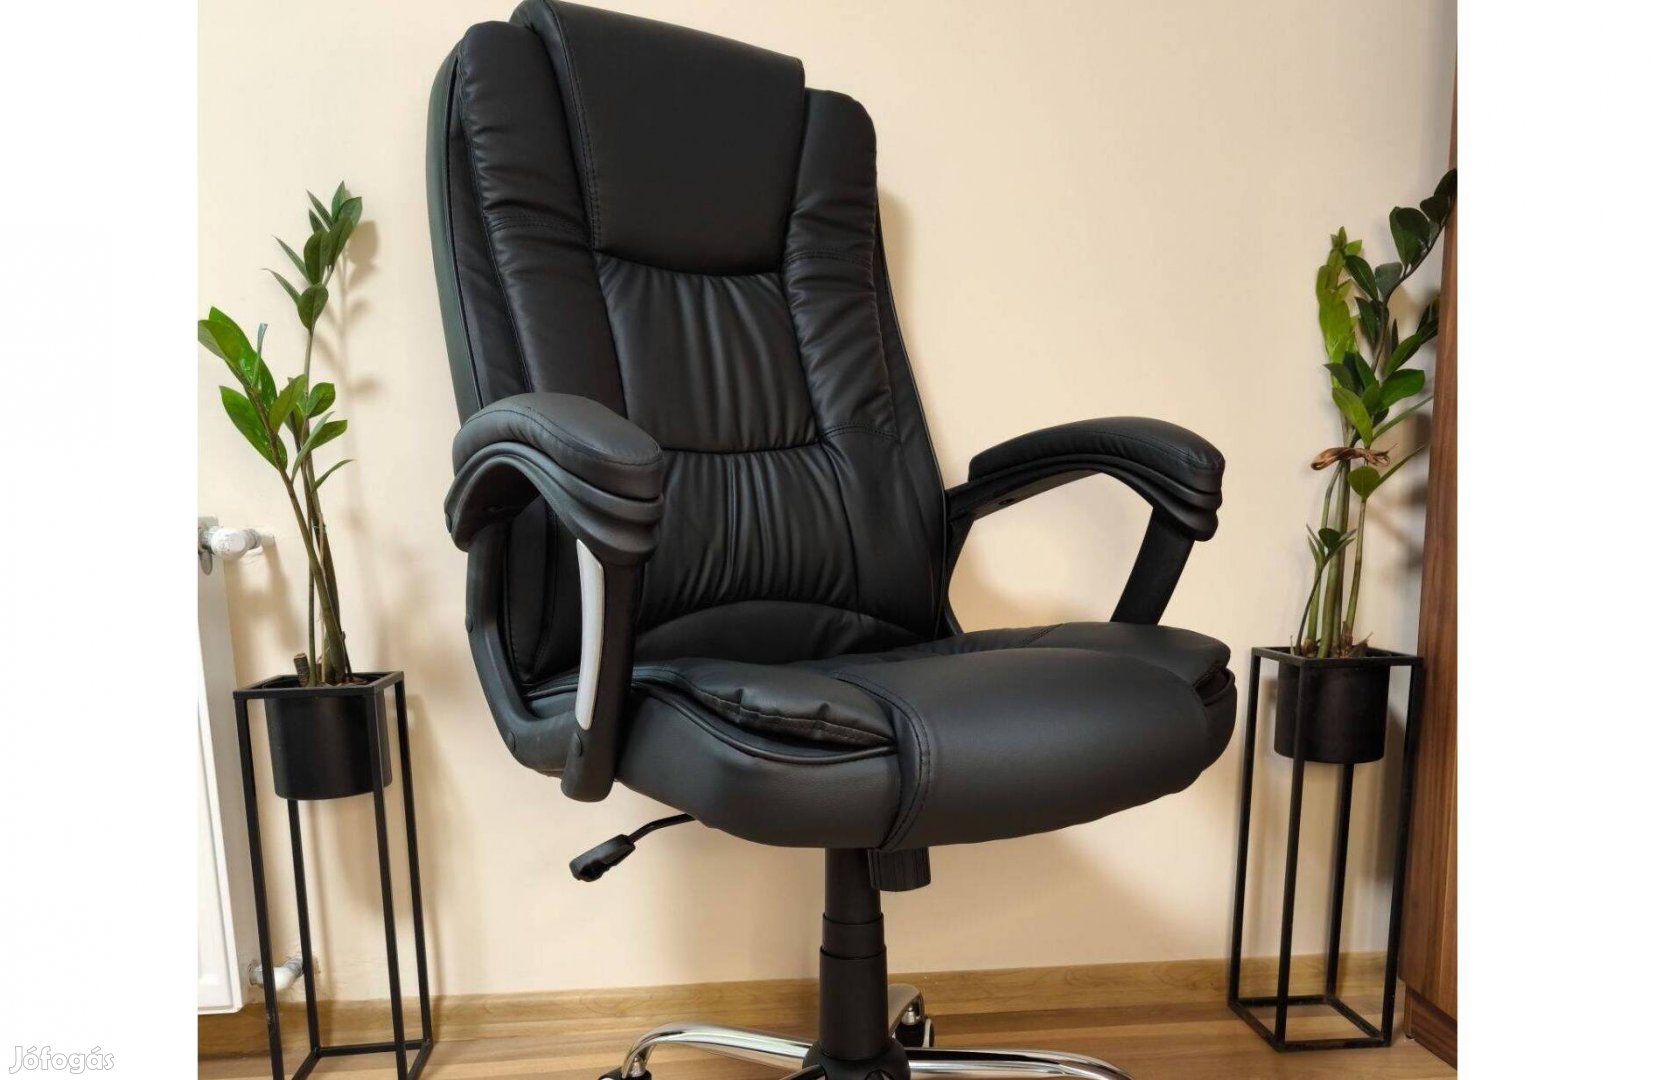 Ergonomic gazdagon kárpitozott főnöki fotel irodai szék forgószék